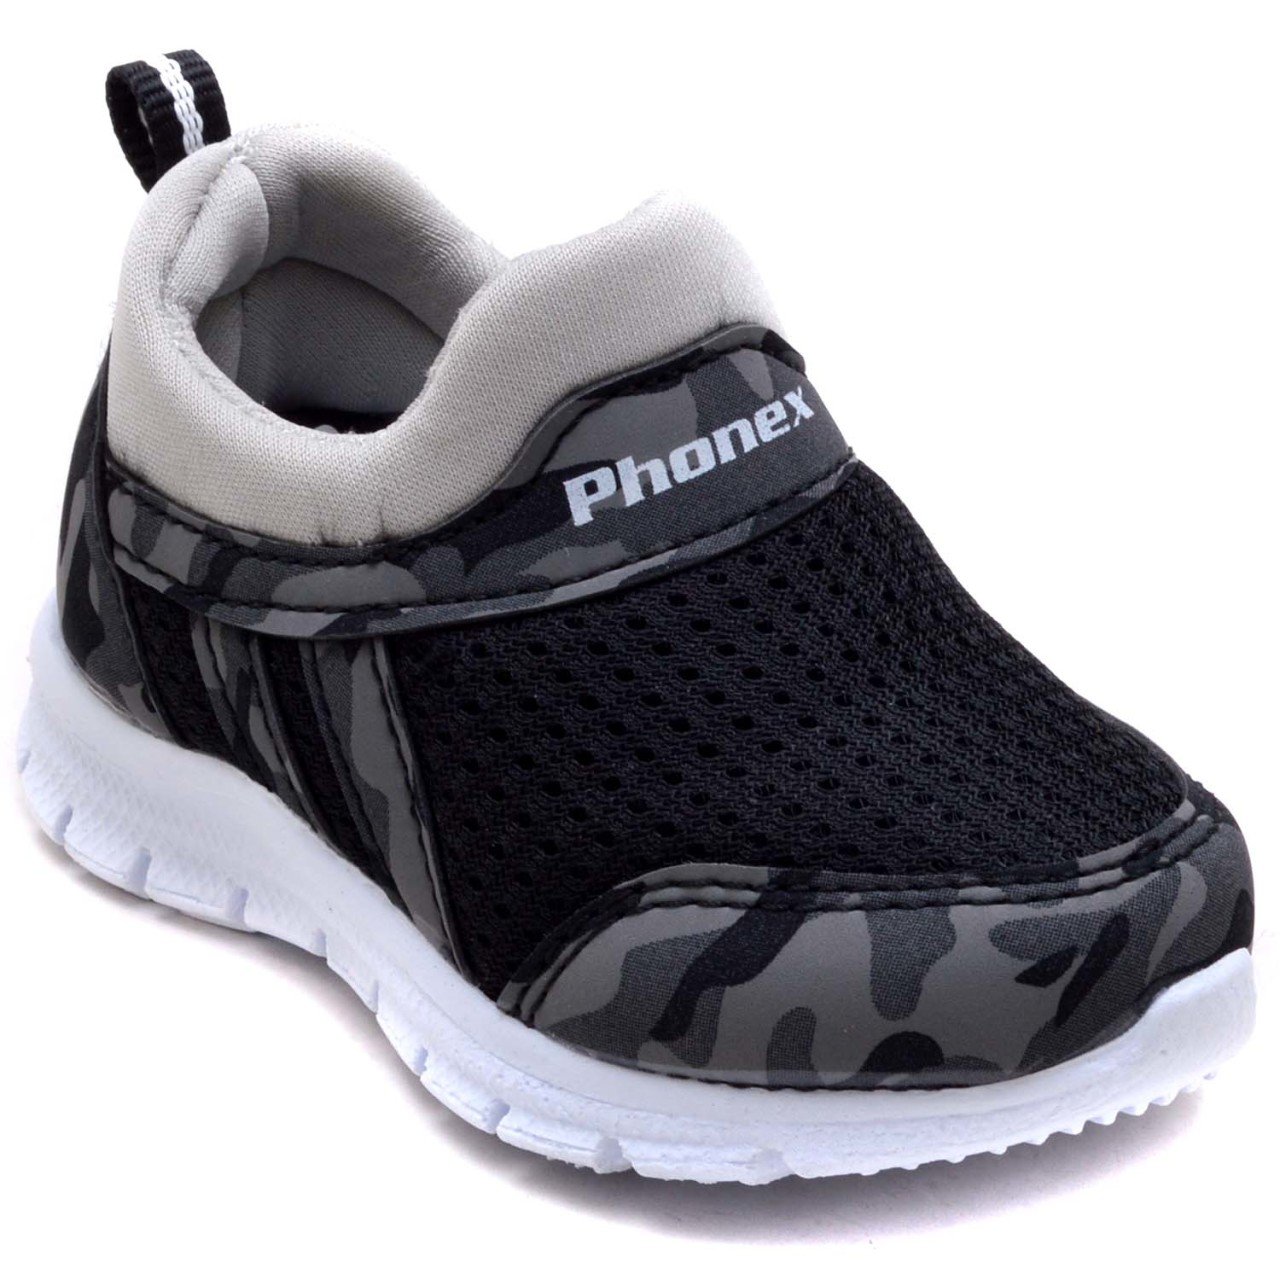 PHNX-11 Bebe Spor Ayakkabı - Kamuflaj/G